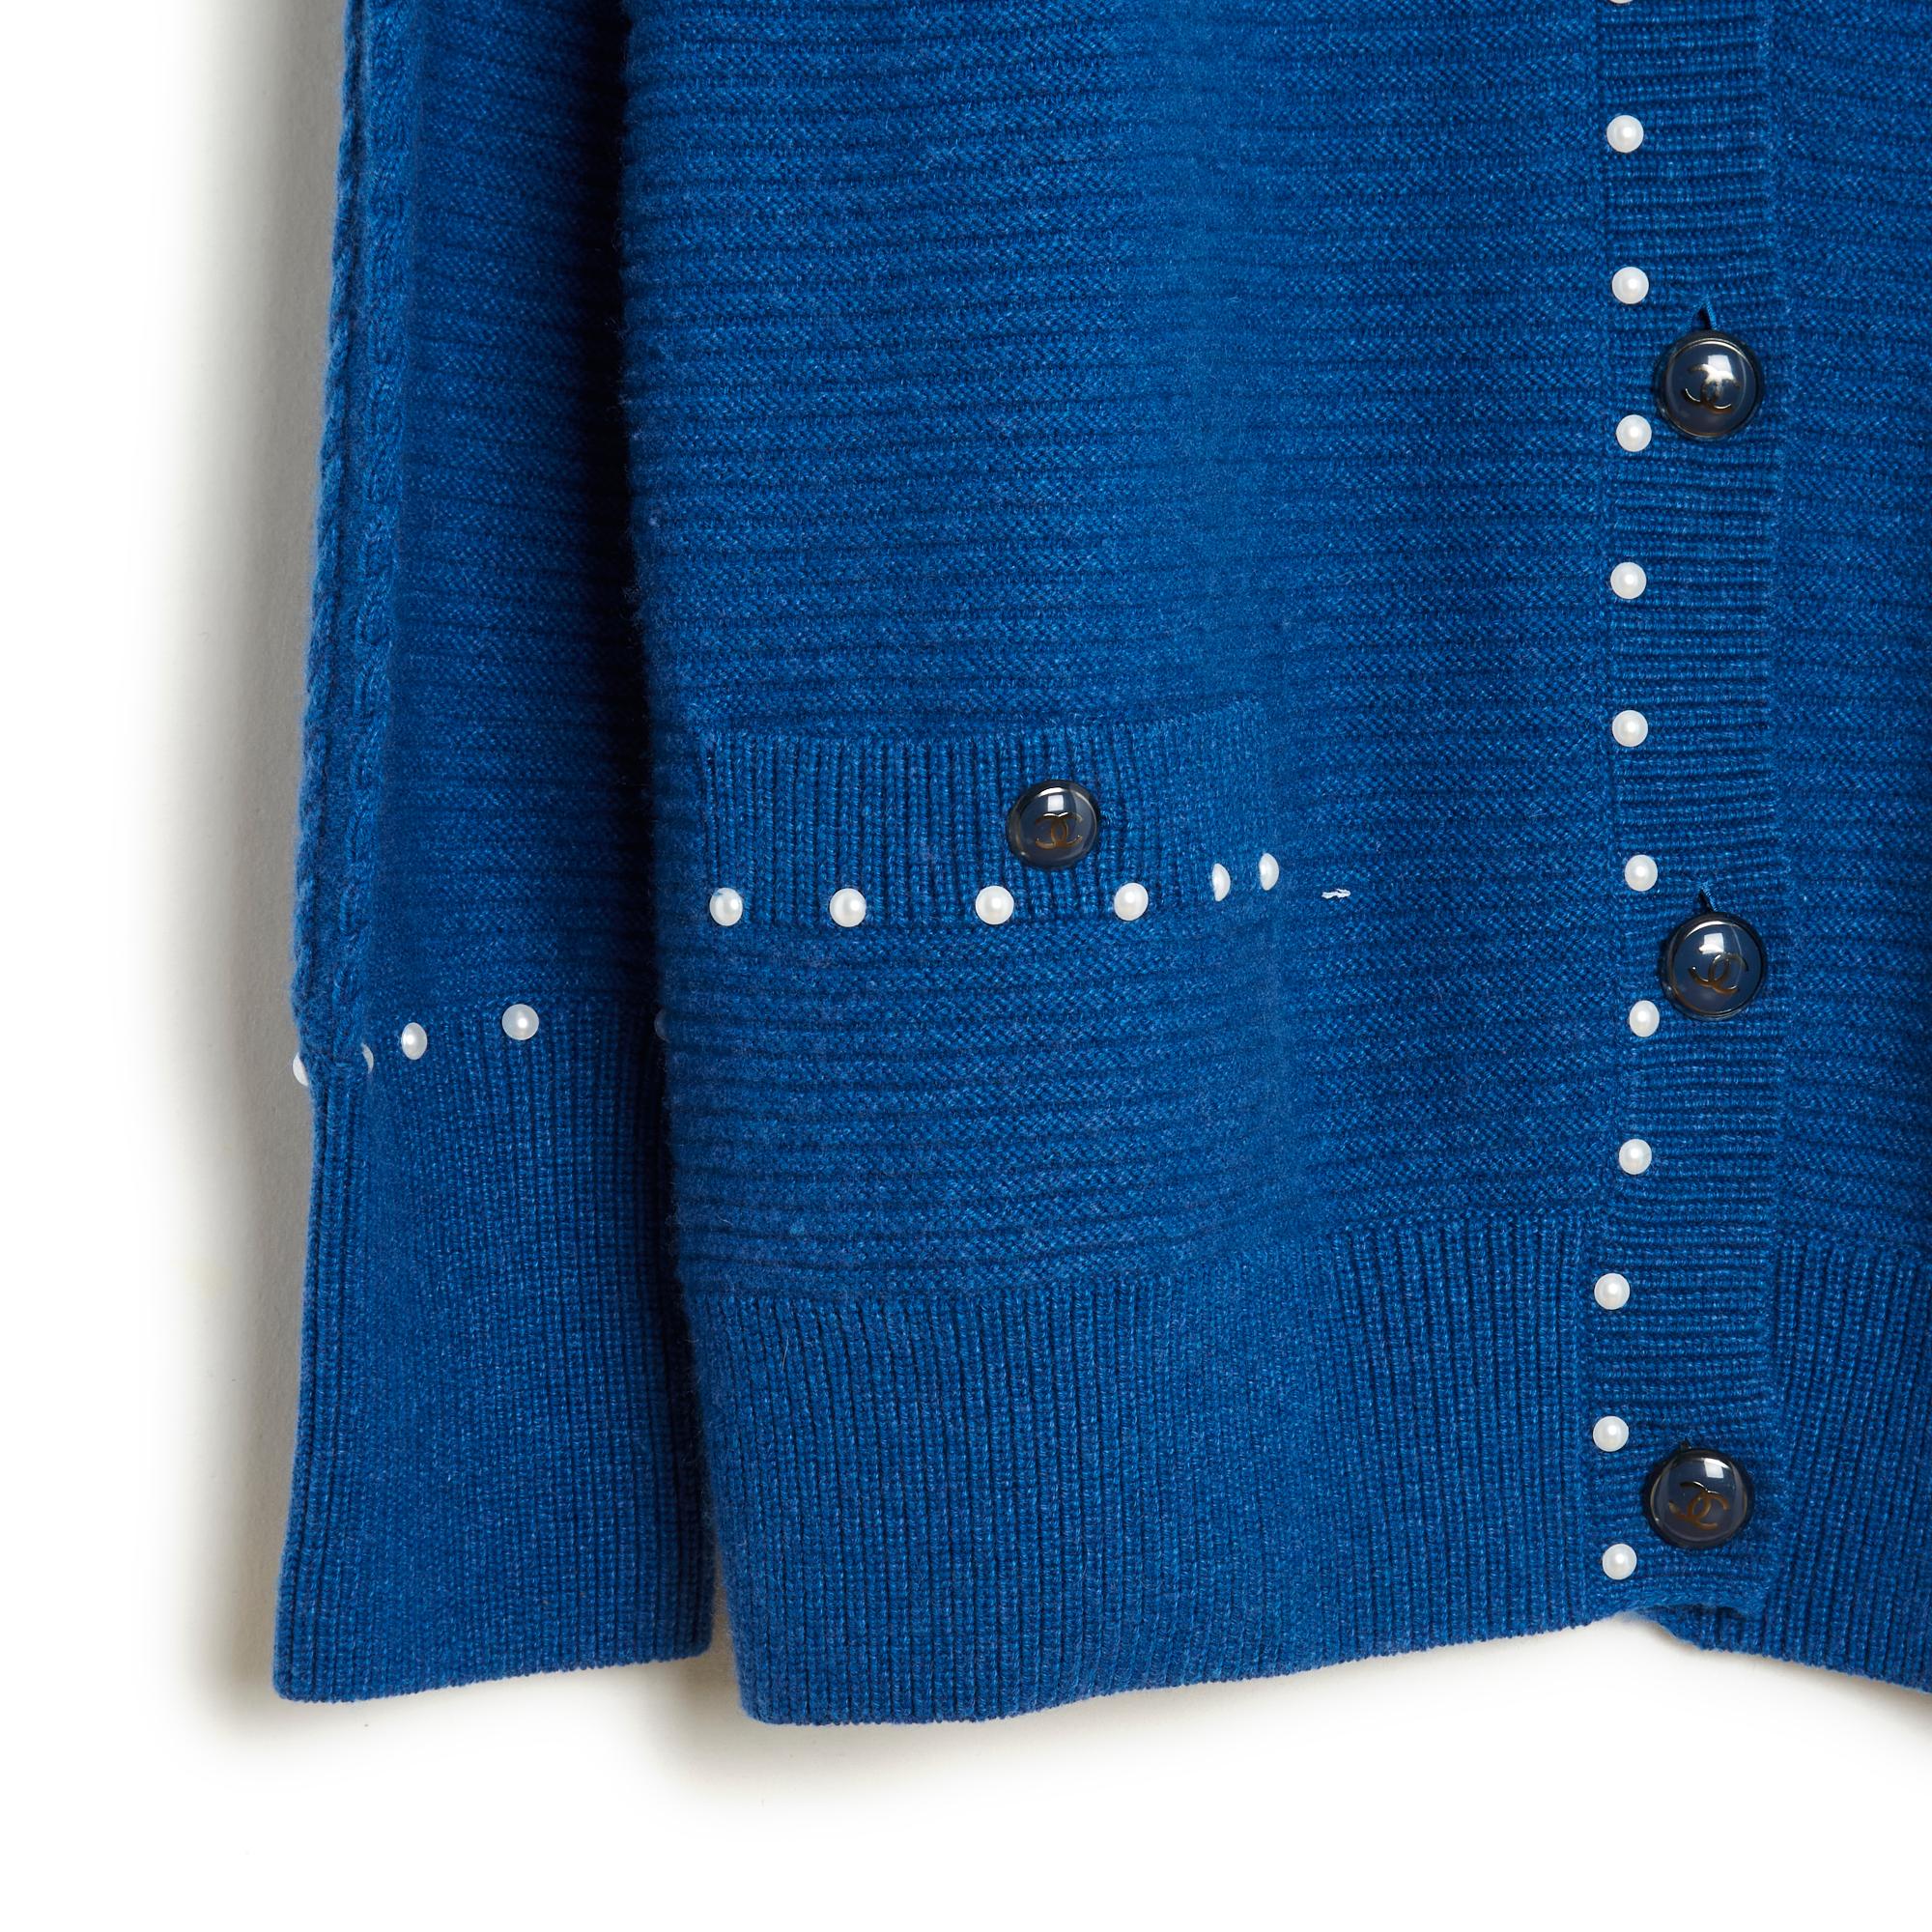 Chanel Strickjacke circa 2016 aus Baumwollstrick (53%) und Kaschmir mit königsblauen Zwirbeln, geschlossener V-Ausschnitt und Taschen, die mit geschwärzten silbernen Metallknöpfen geschlossen werden, rundum mit Halbperlen eingefasst, gerippte